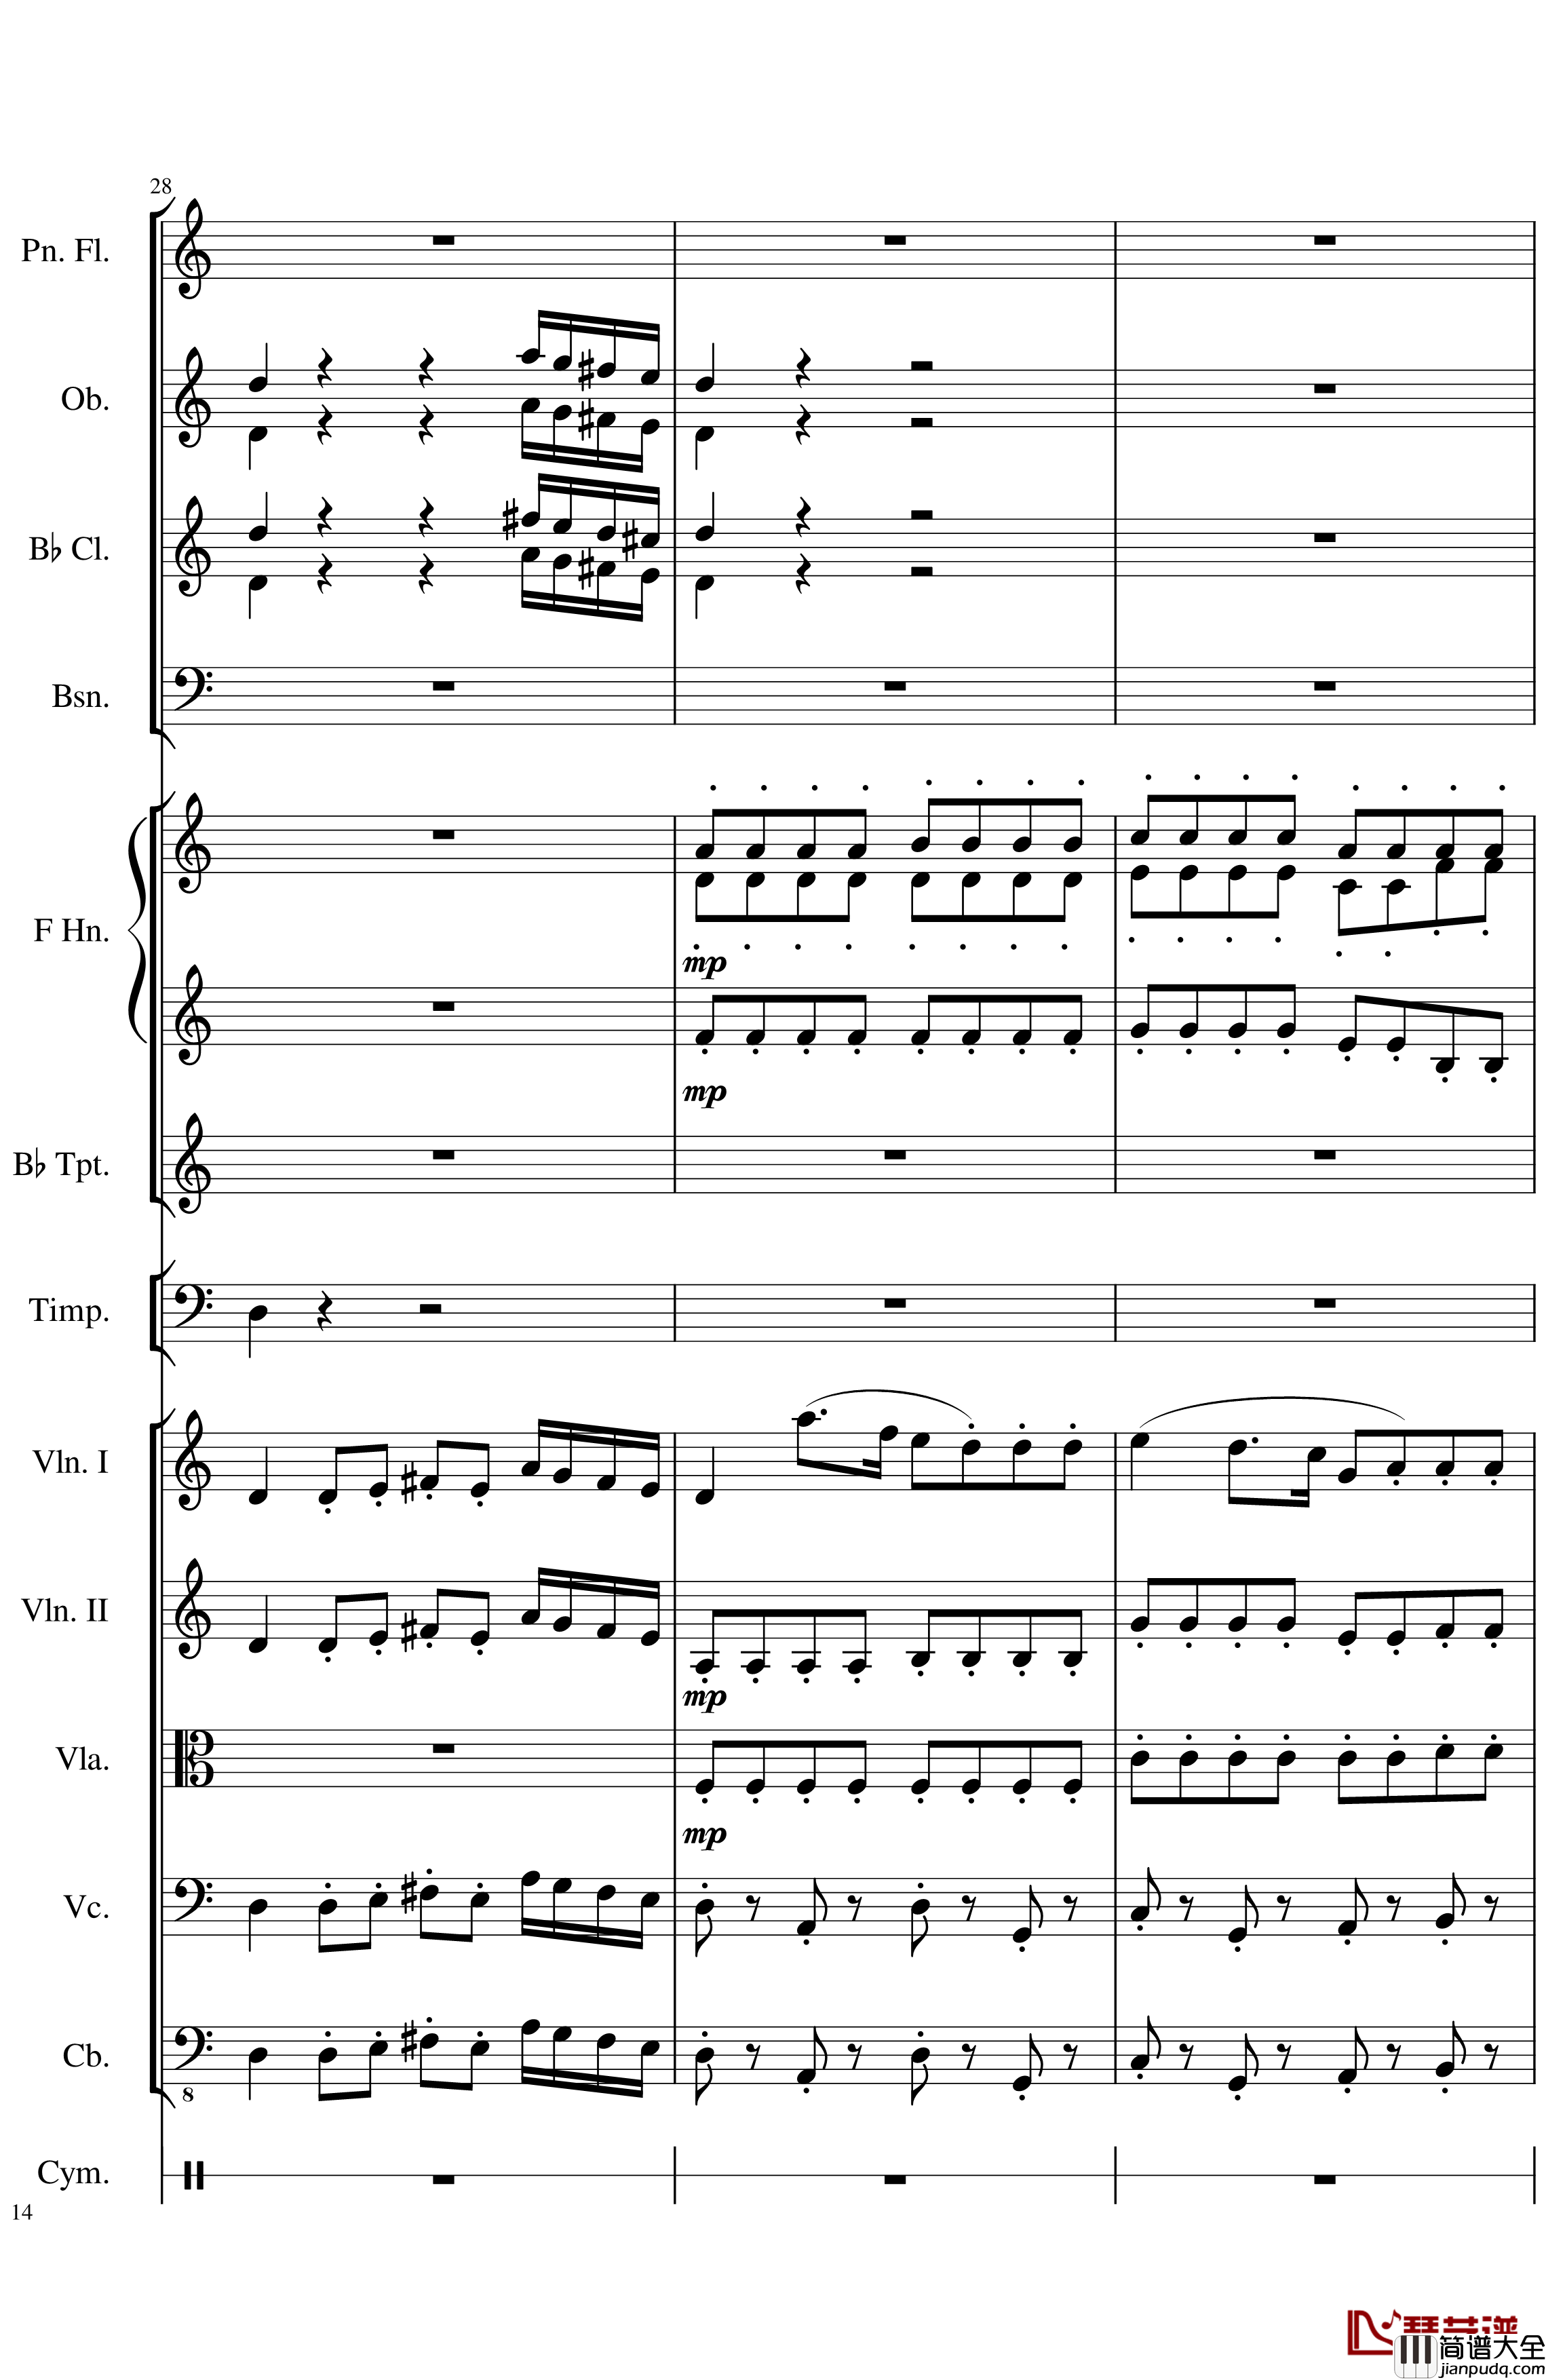 Op.122端午节快乐钢琴谱_长笛与乐队协奏曲_一个球